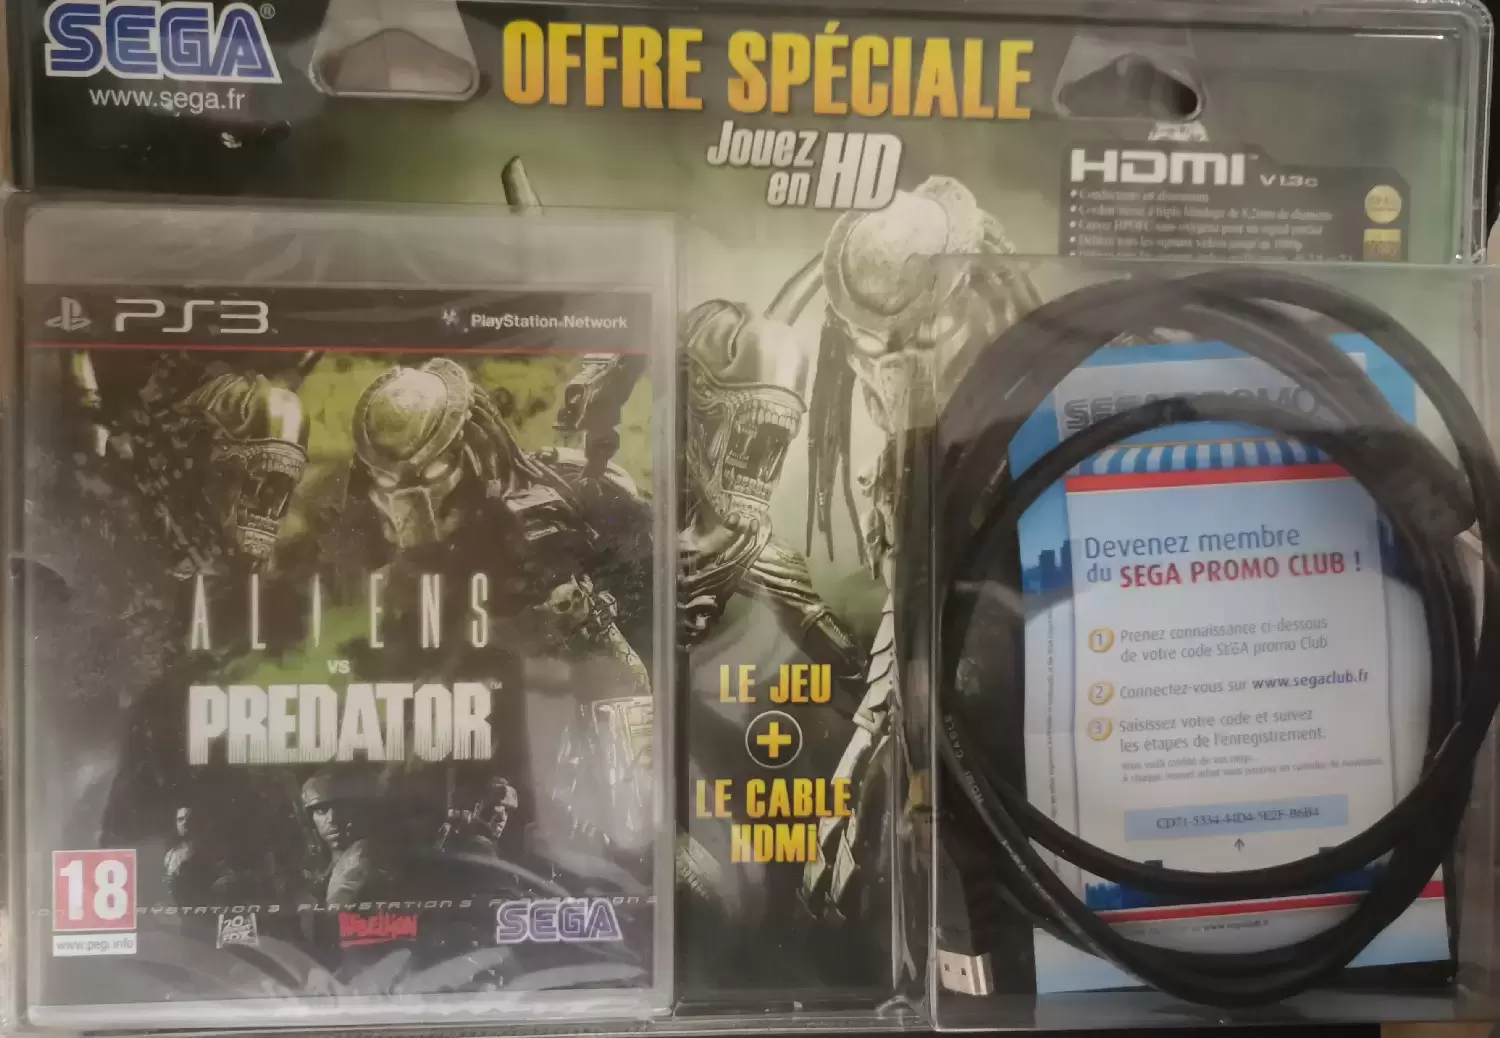 PS3 Games - Alien vs Predator + Cable HDMI